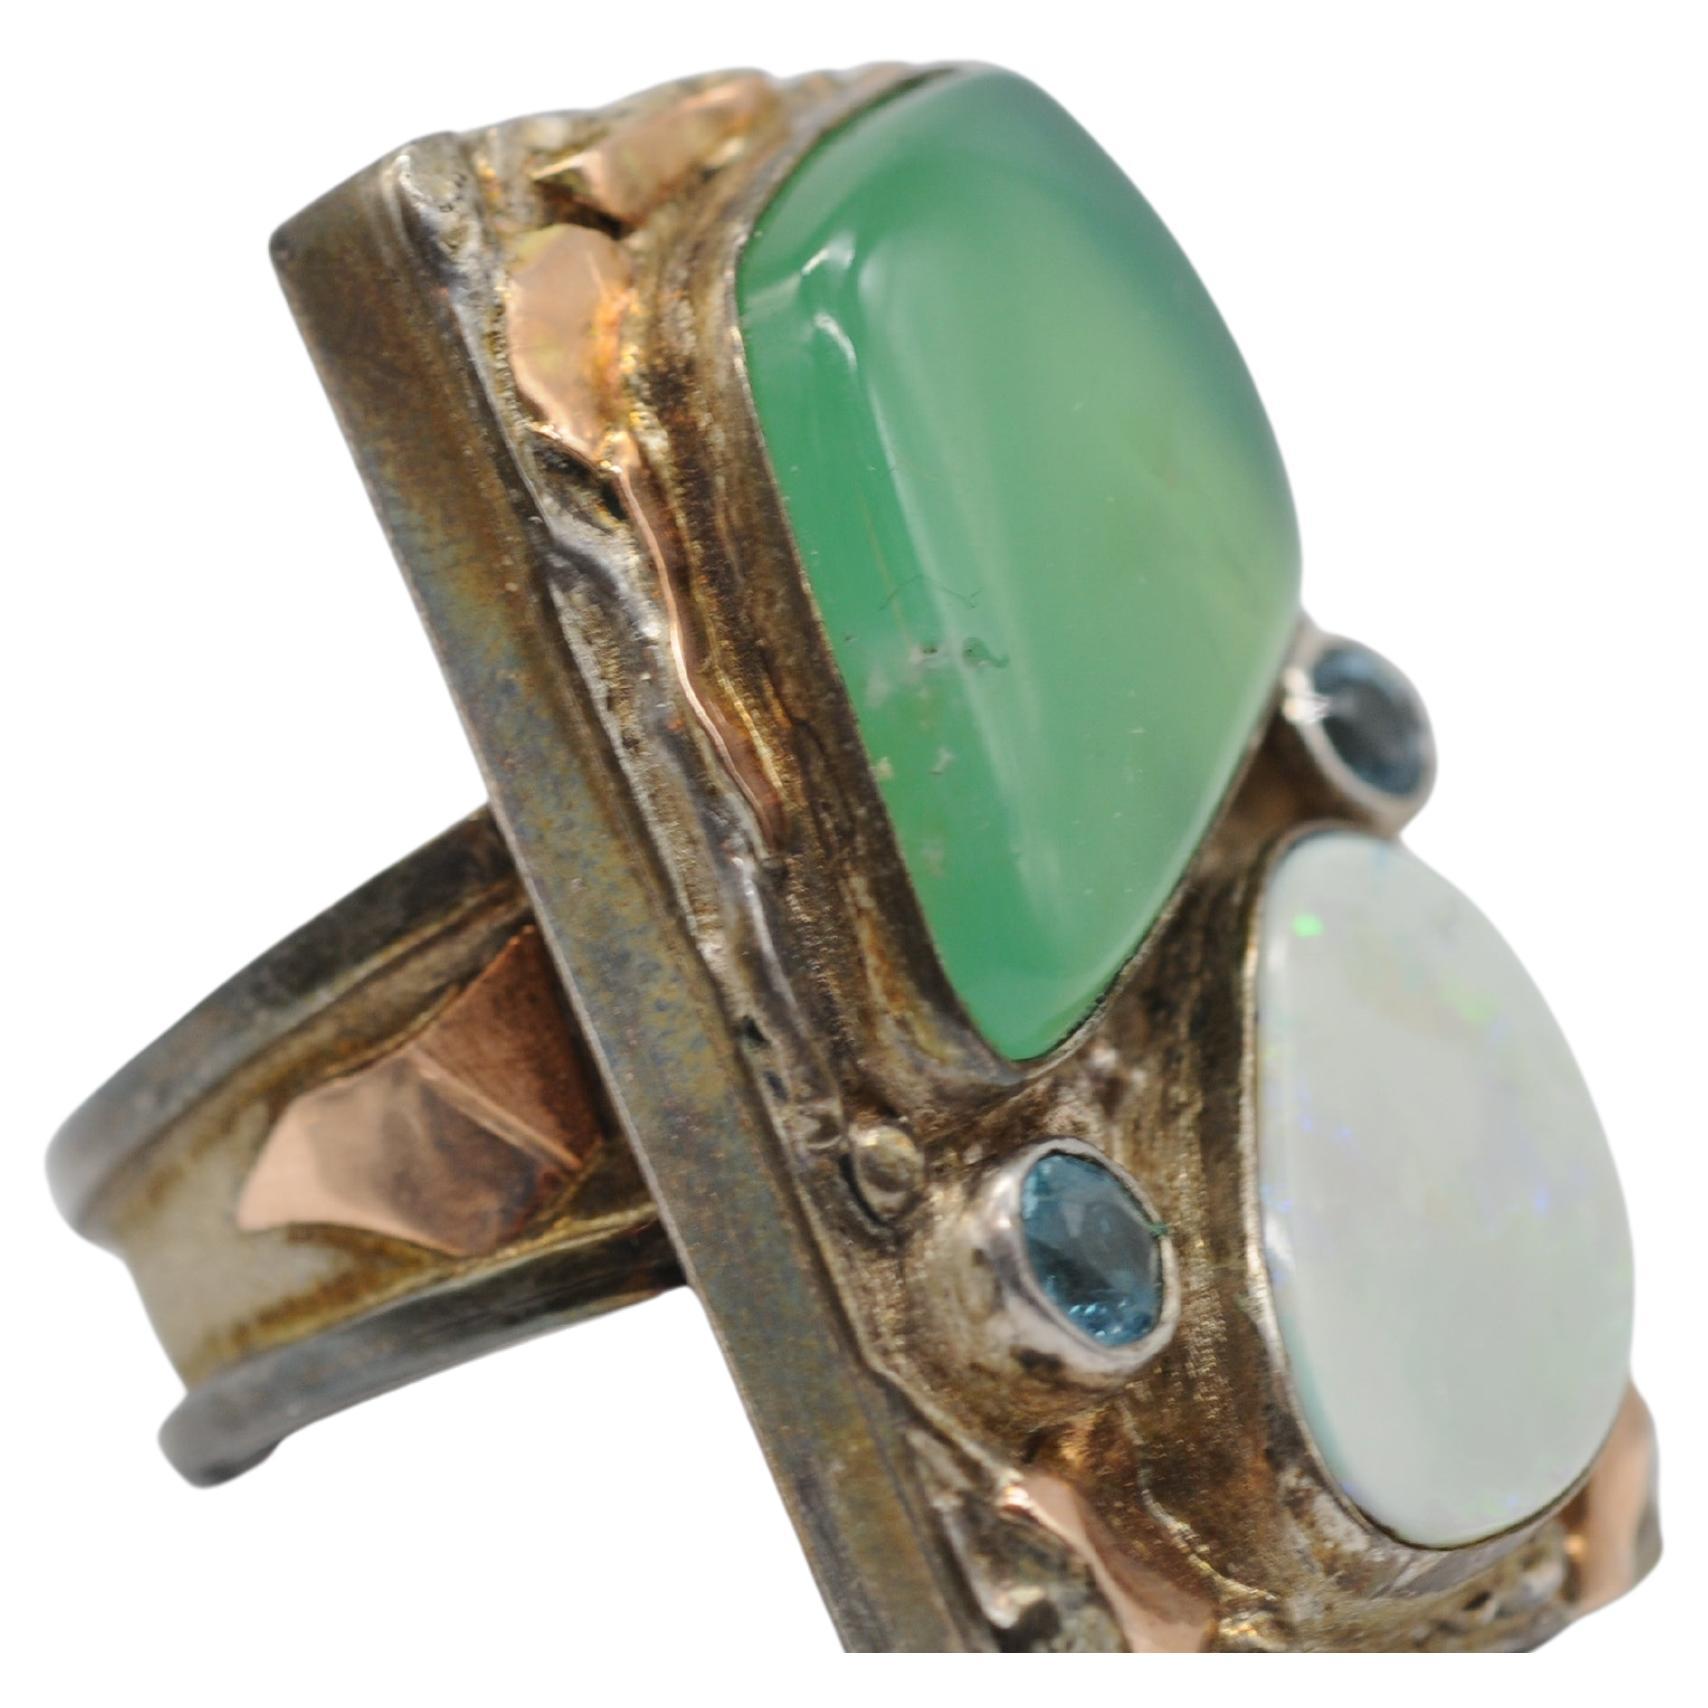 Treten Sie ein in eine Welt zeitloser Eleganz mit diesem exquisiten Ring aus antikem Silber, verziert mit zarten Roségold-Akzenten und einer atemberaubenden Auswahl an Edelsteinen wie Opal, Aquamarin und möglicherweise Jade. Dieser bezaubernde Ring